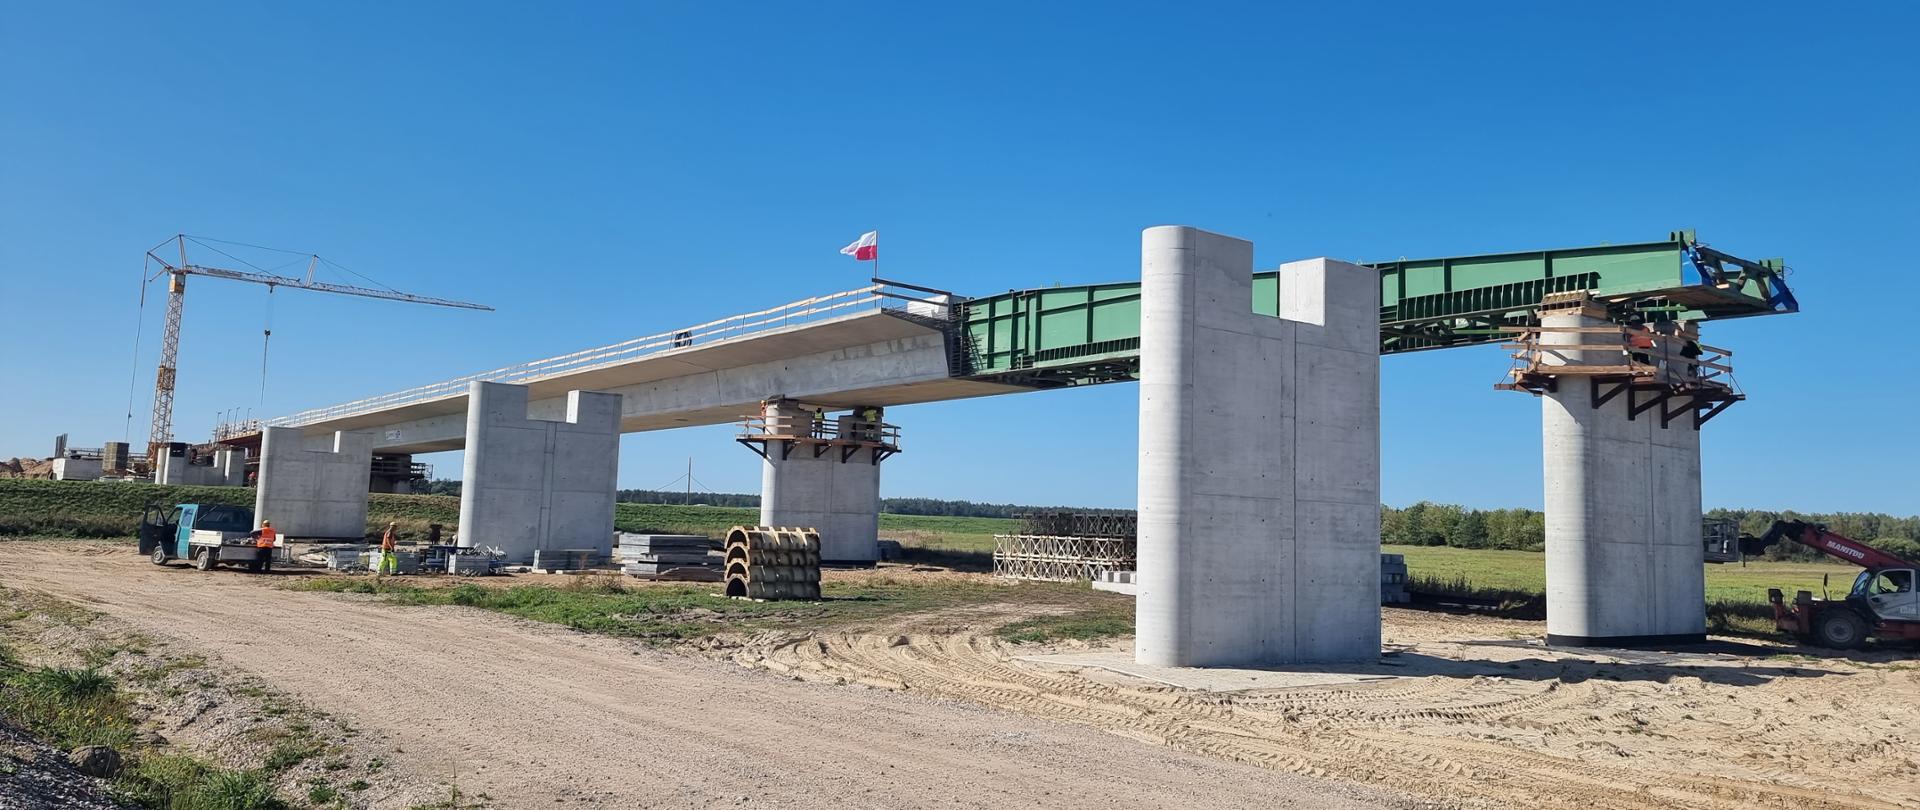 Nasuwanie mostu na betonowe podpory mostu